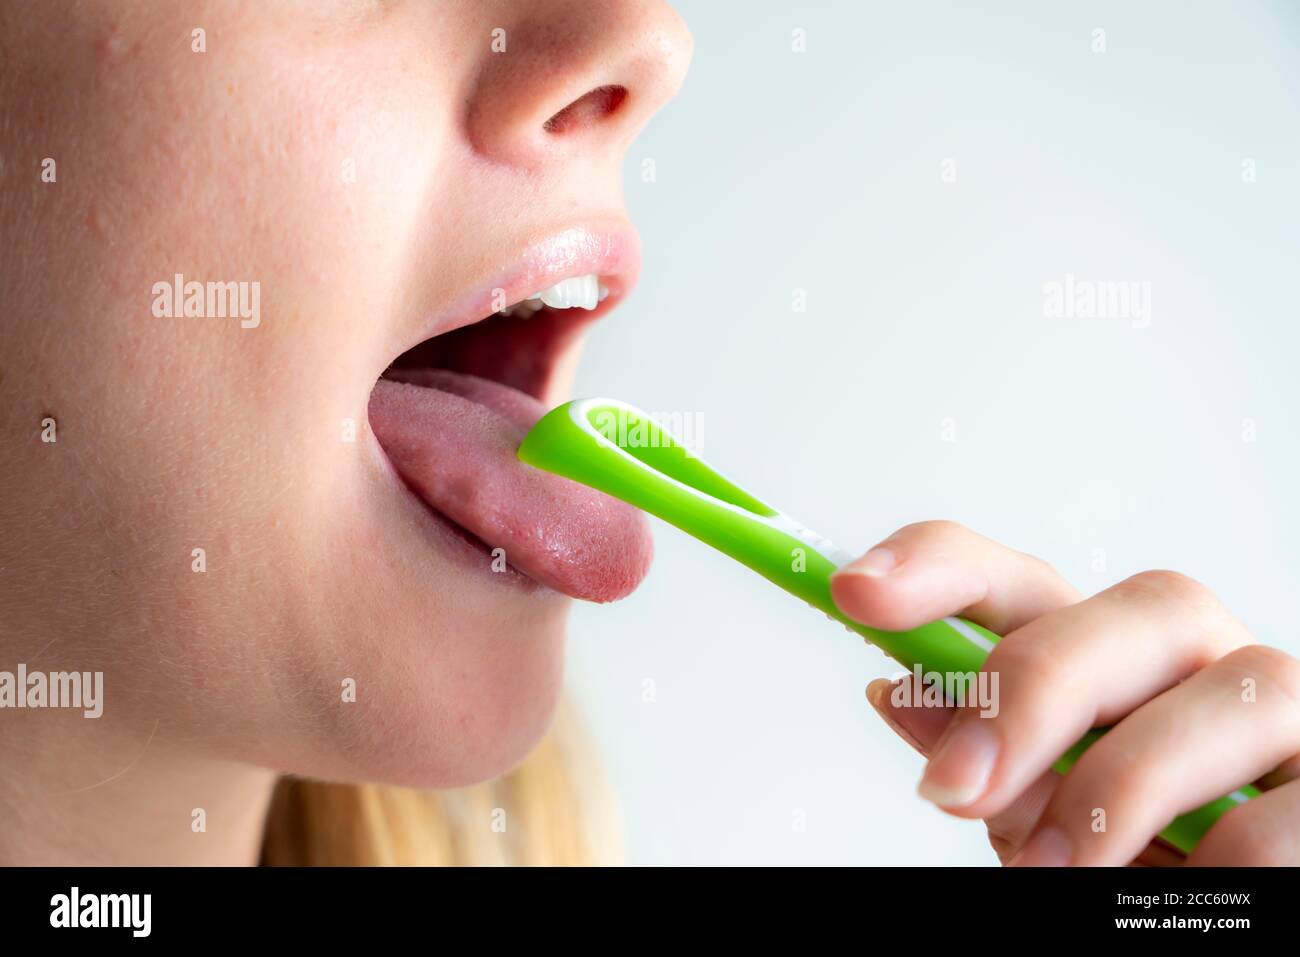 Mauvaise haleine, prévention en nettoyant la langue à l'aide d'une brosse pour langue Banque D'Images